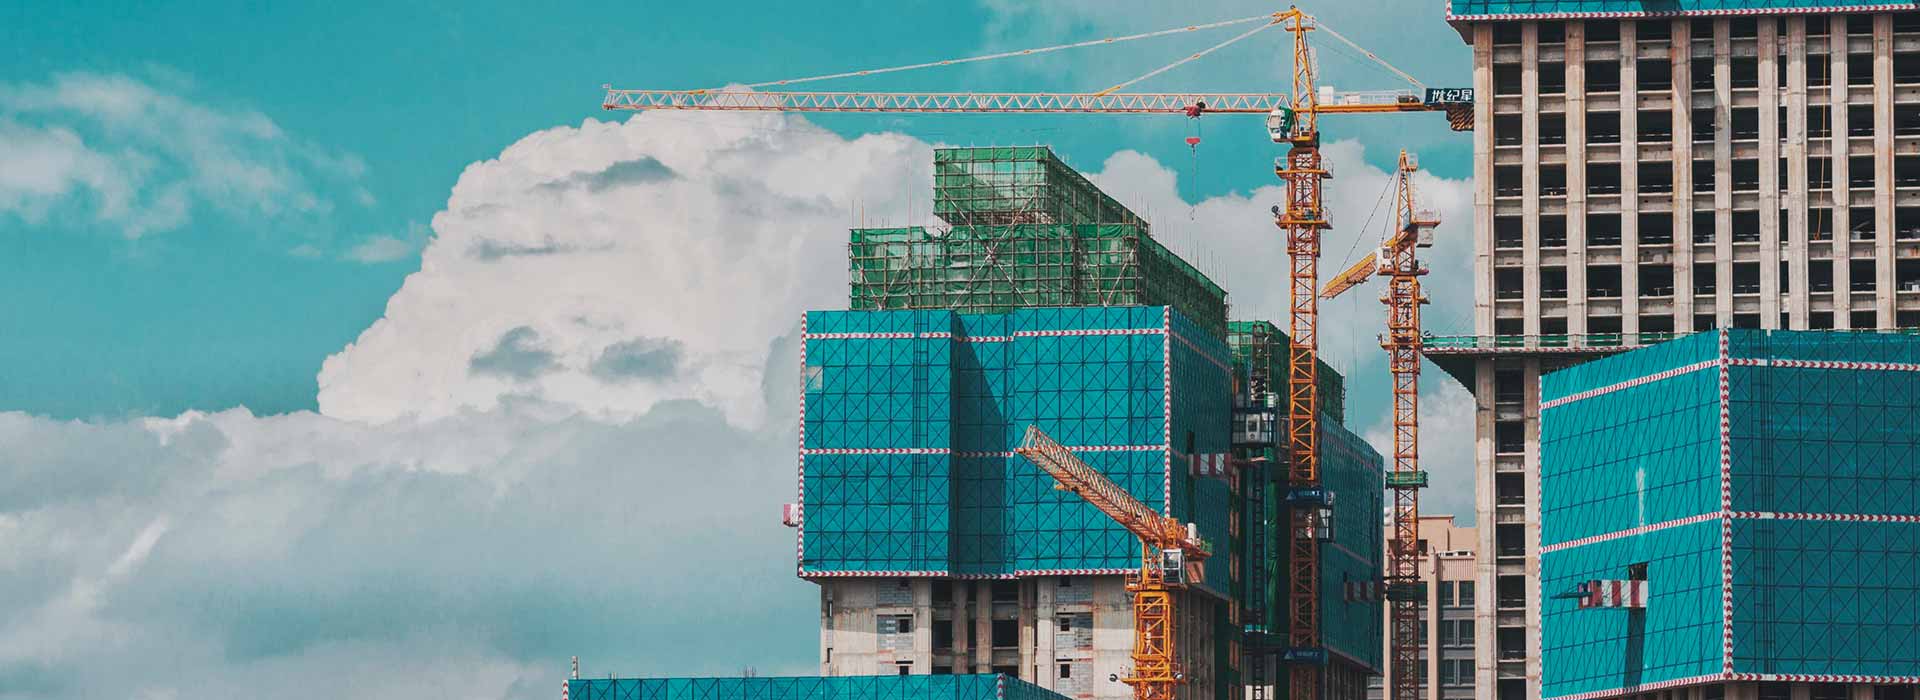 Imprese di Costruzioni Europee: le dimensioni contano 